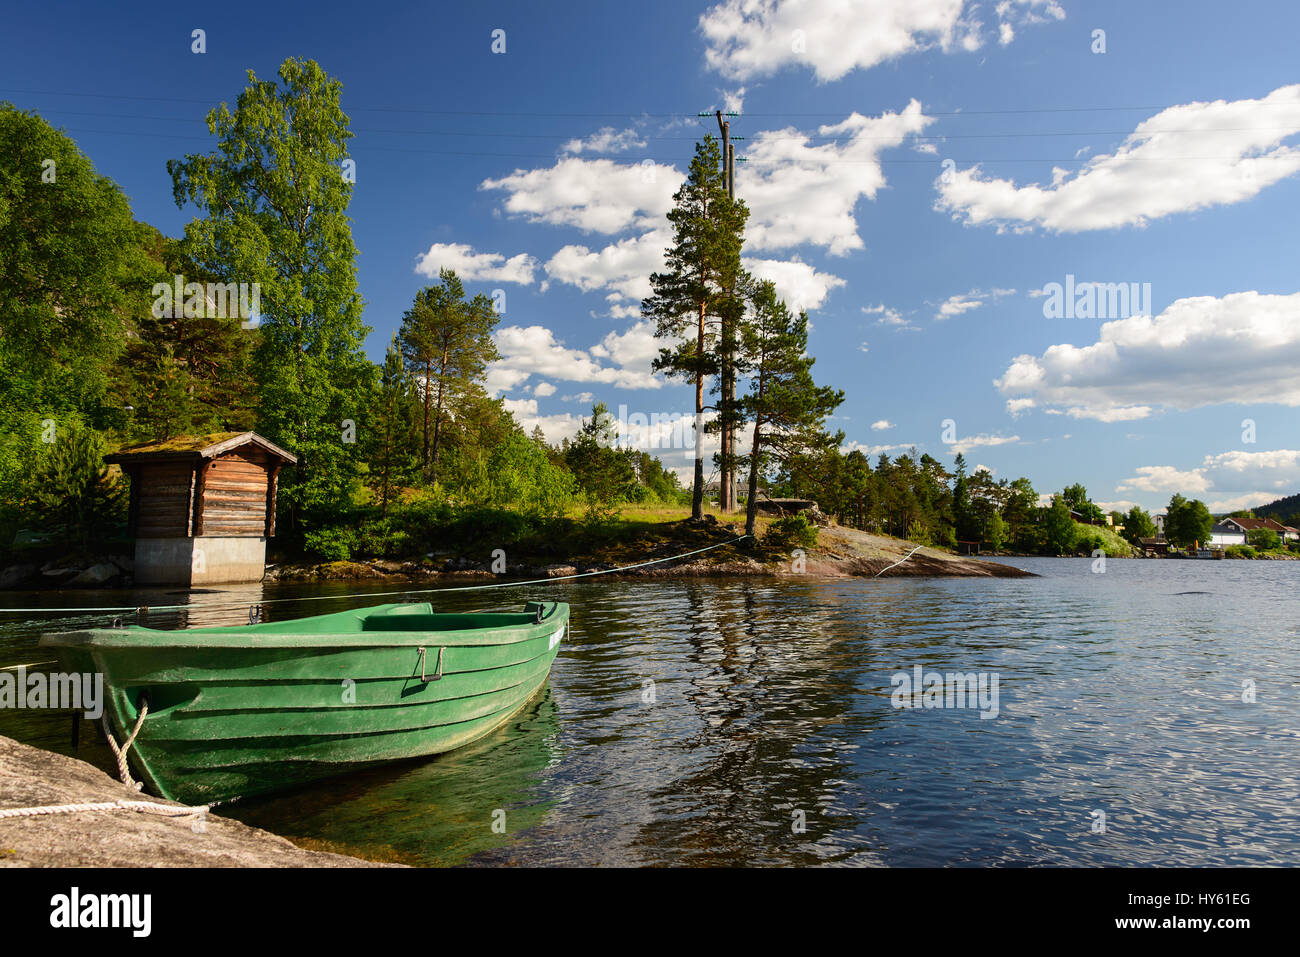 Un paysage vert avec une barque dans l'eau sous des arbres à la frontière du fjord en Norvège. Banque D'Images